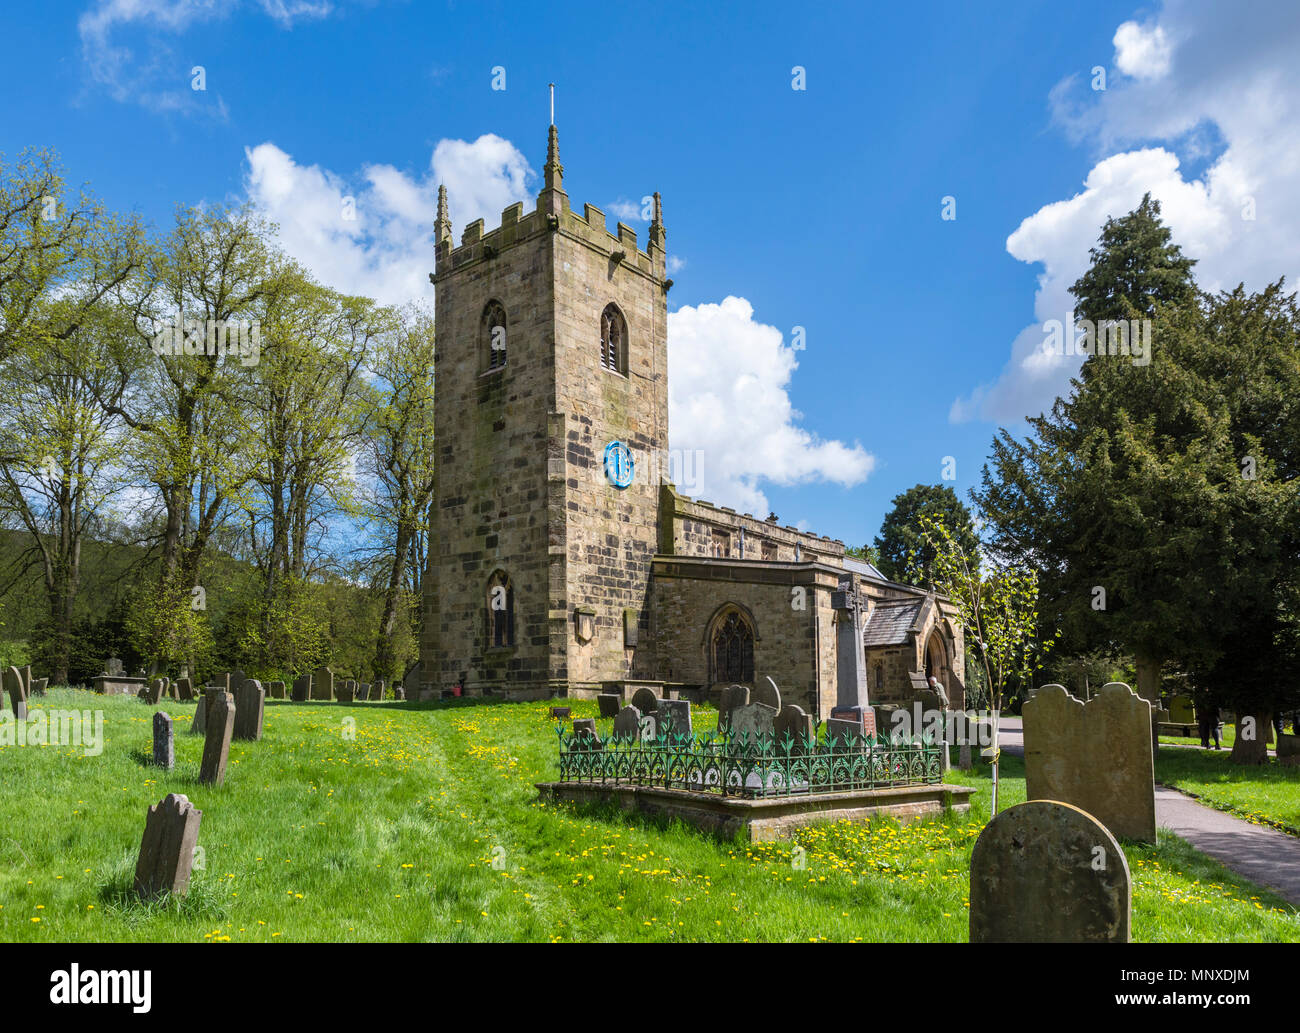 L'église paroissiale de Eyam, Peak District, Derbyshire, Angleterre, Royaume-Uni. Eyam est parfois appelé le Village de la peste. Banque D'Images